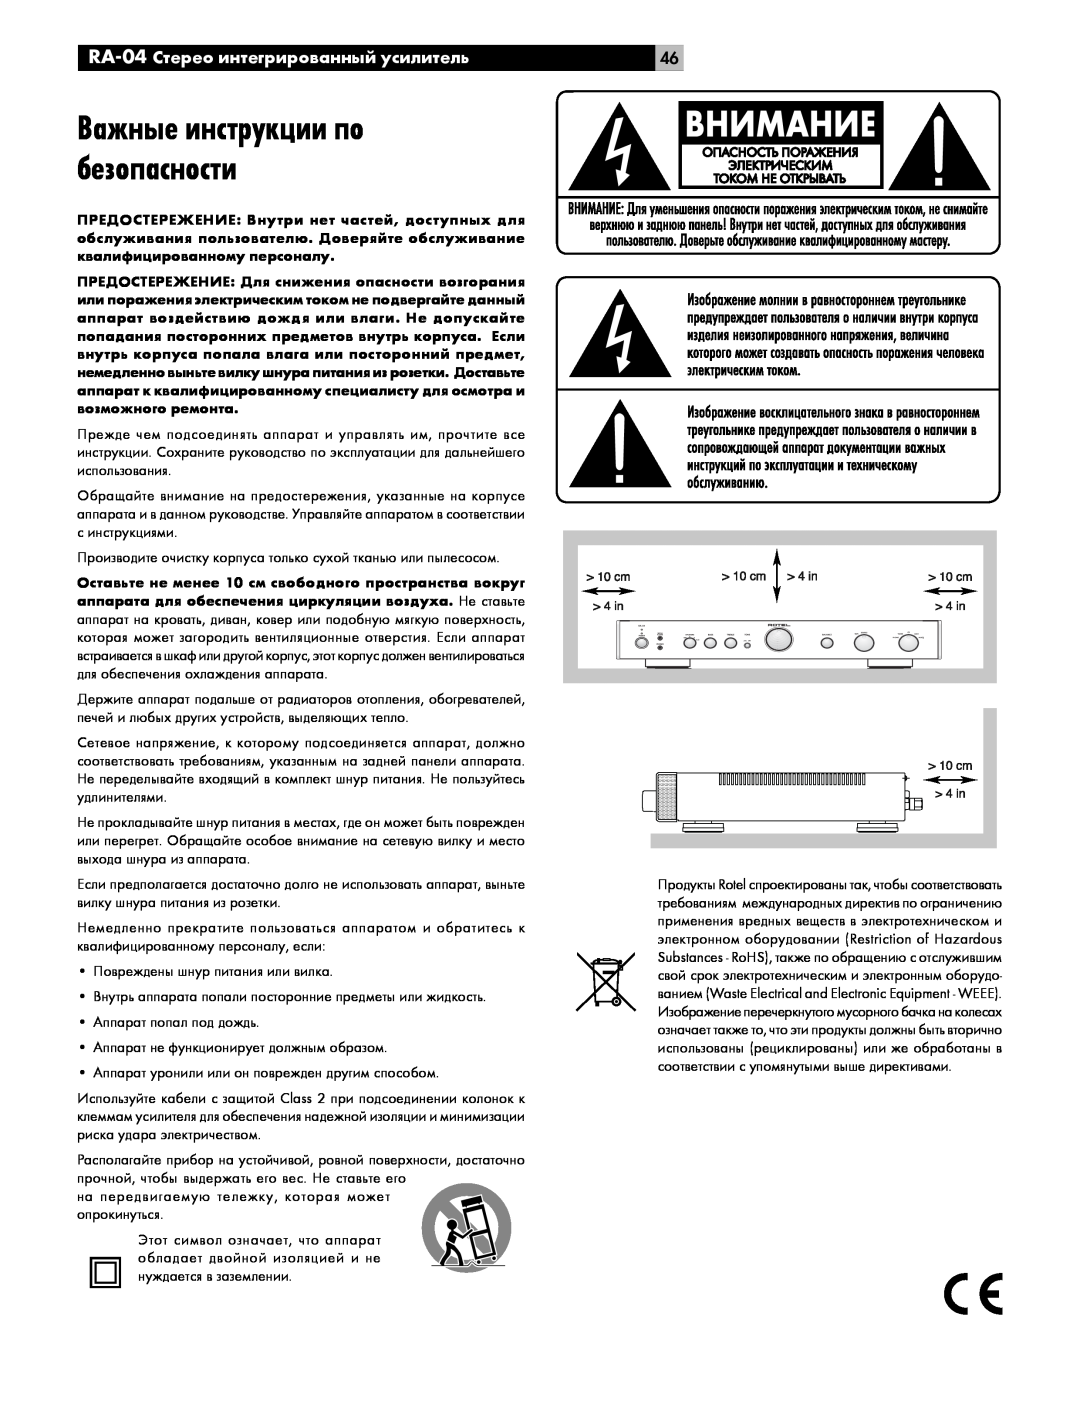 Rotel owner manual Важные инструкции по безопасности, RA-04Стерео интегрированный усилитель 